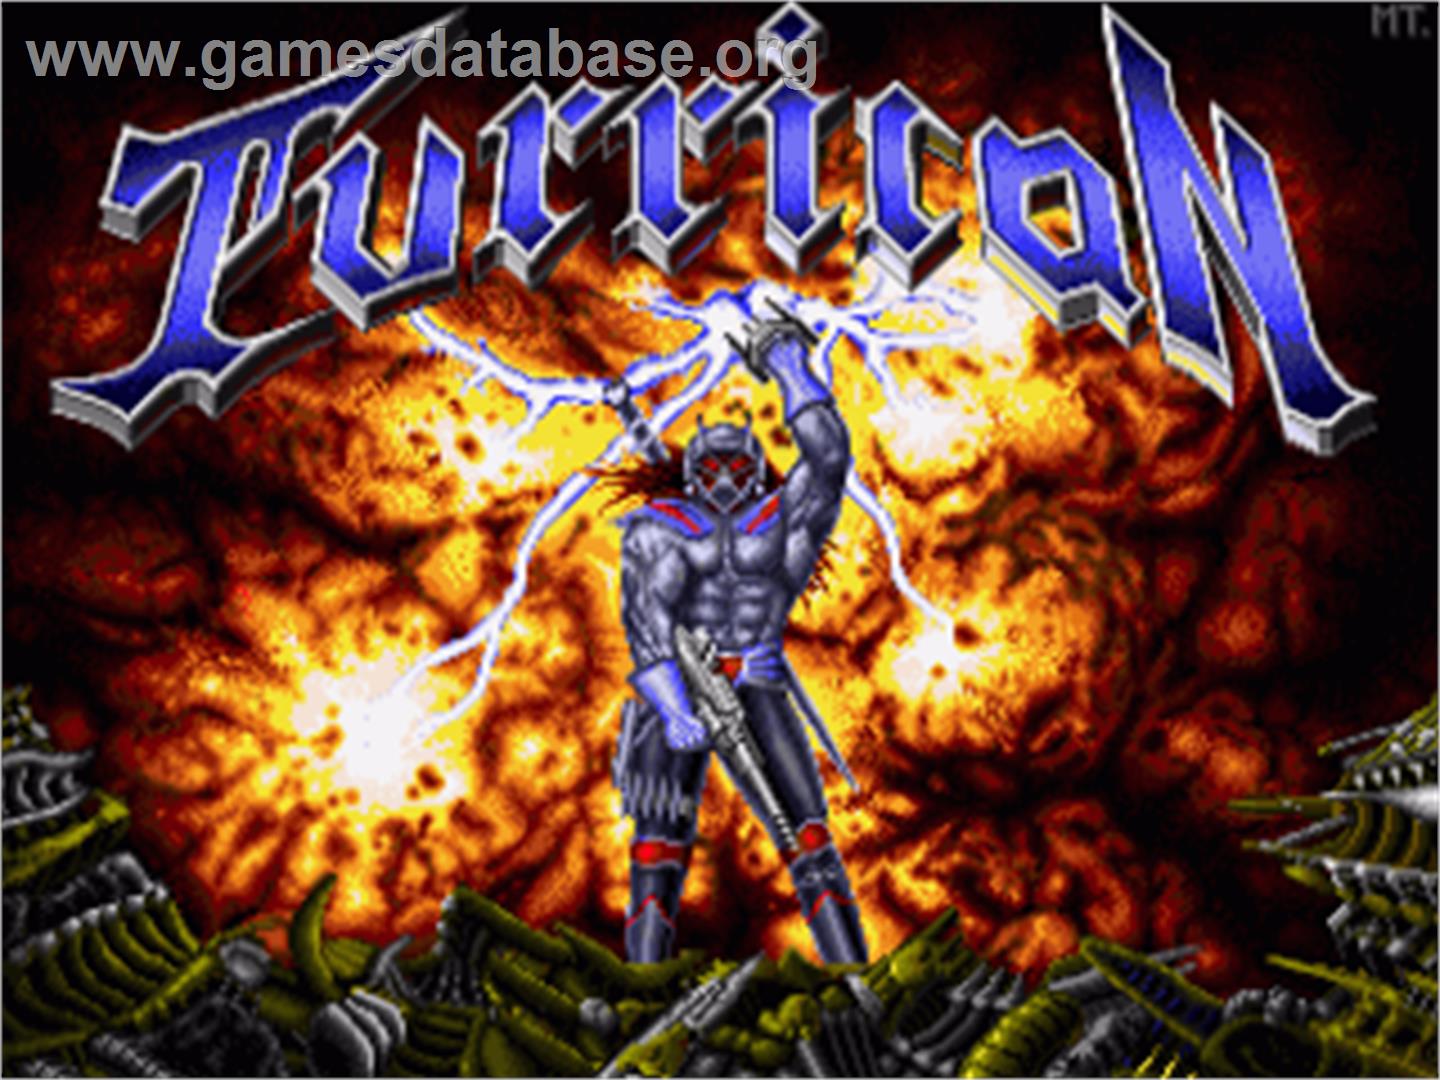 Turrican - Commodore Amiga - Artwork - Title Screen